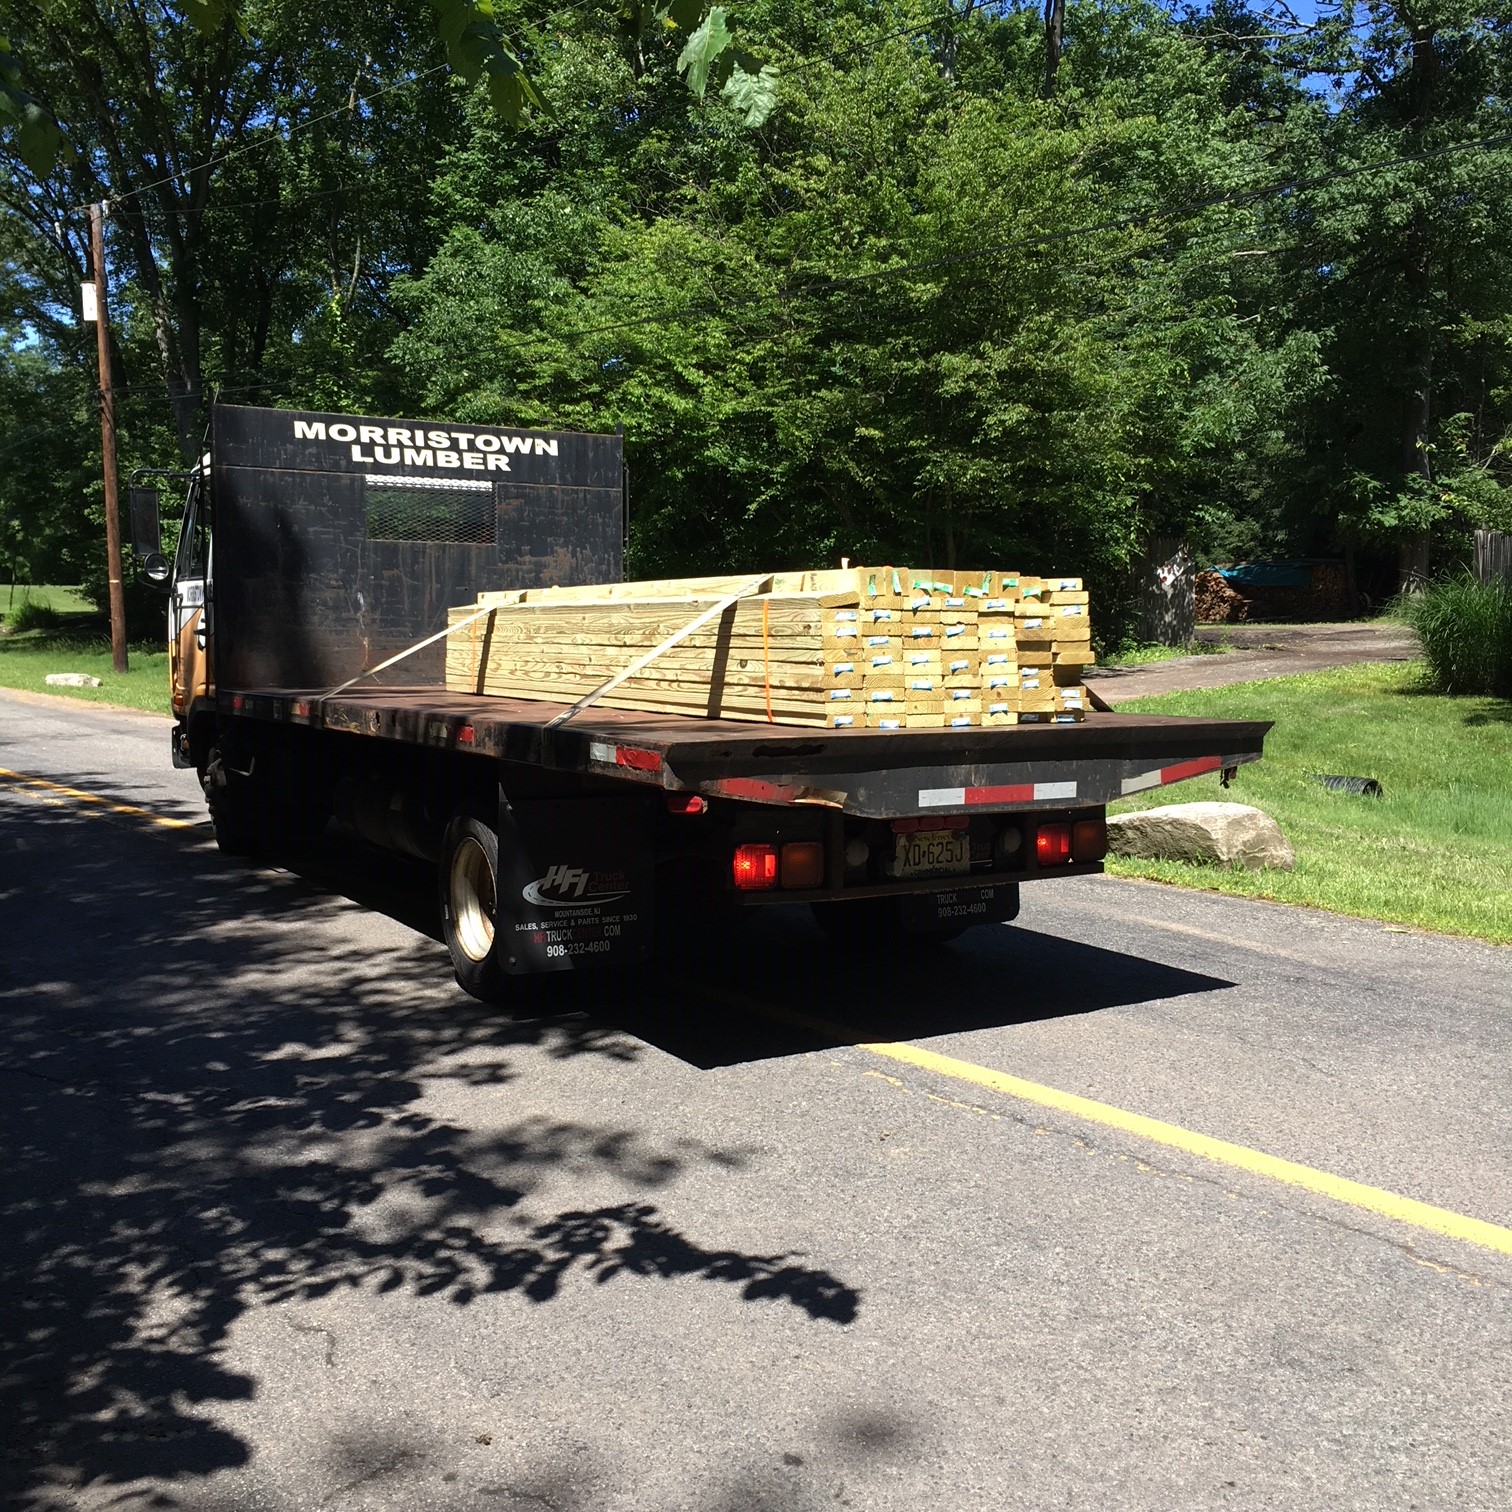 Morristown lumber shipment for boardwalks and bridges